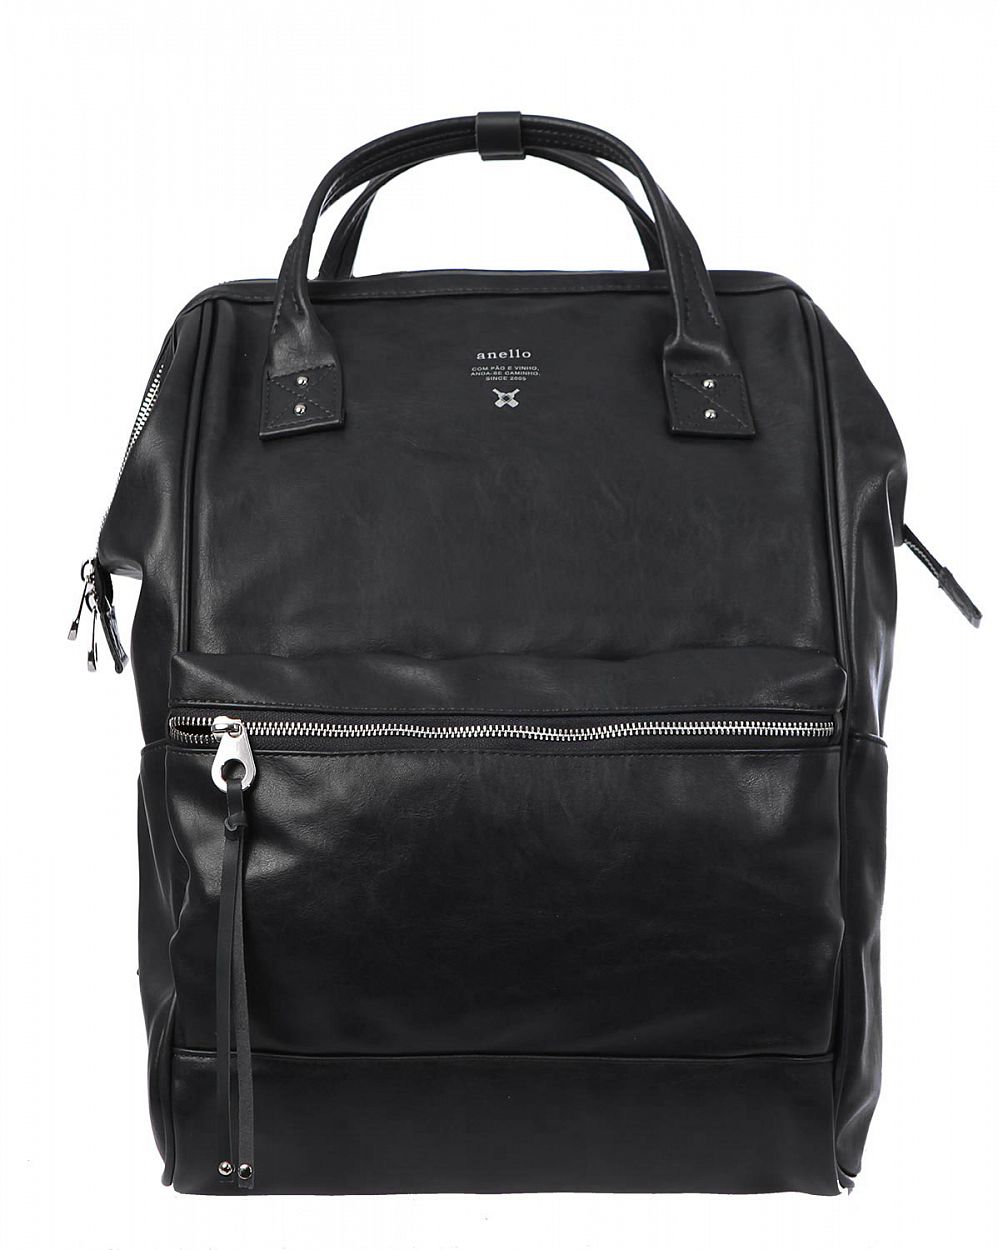 Рюкзак с двумя ручками кожаный для 13 ноутбука Anello Japan AT-B1511 Black отзывы